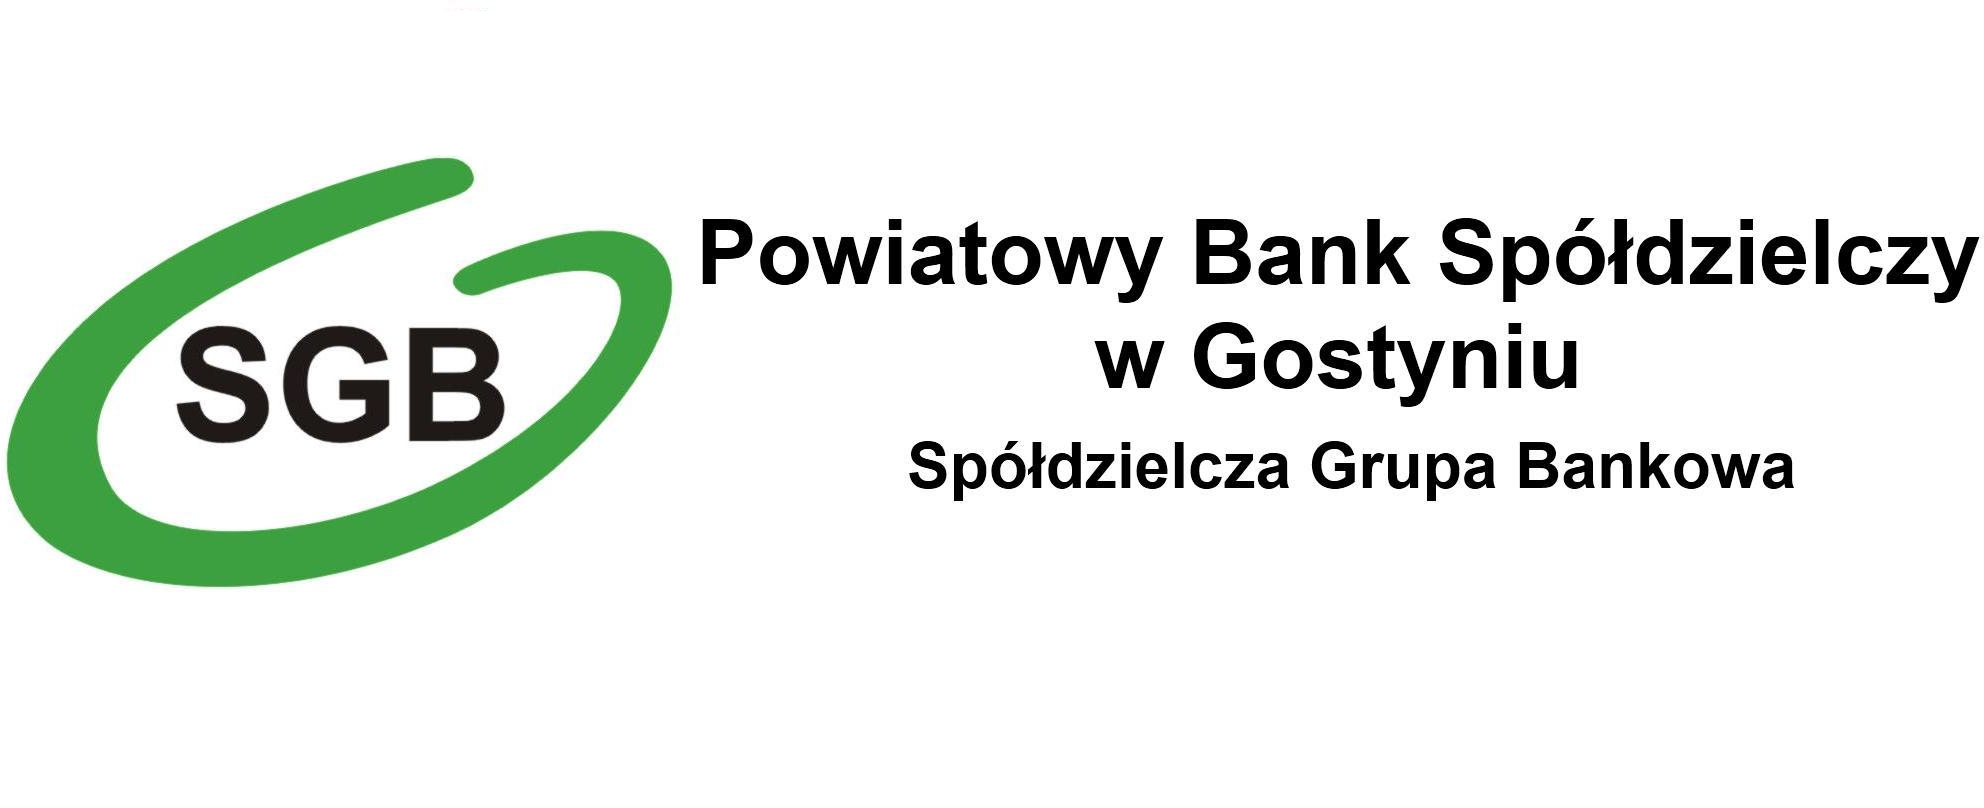 Kontakt - Powiatowy Bank Spółdzielczy w Gostyniu